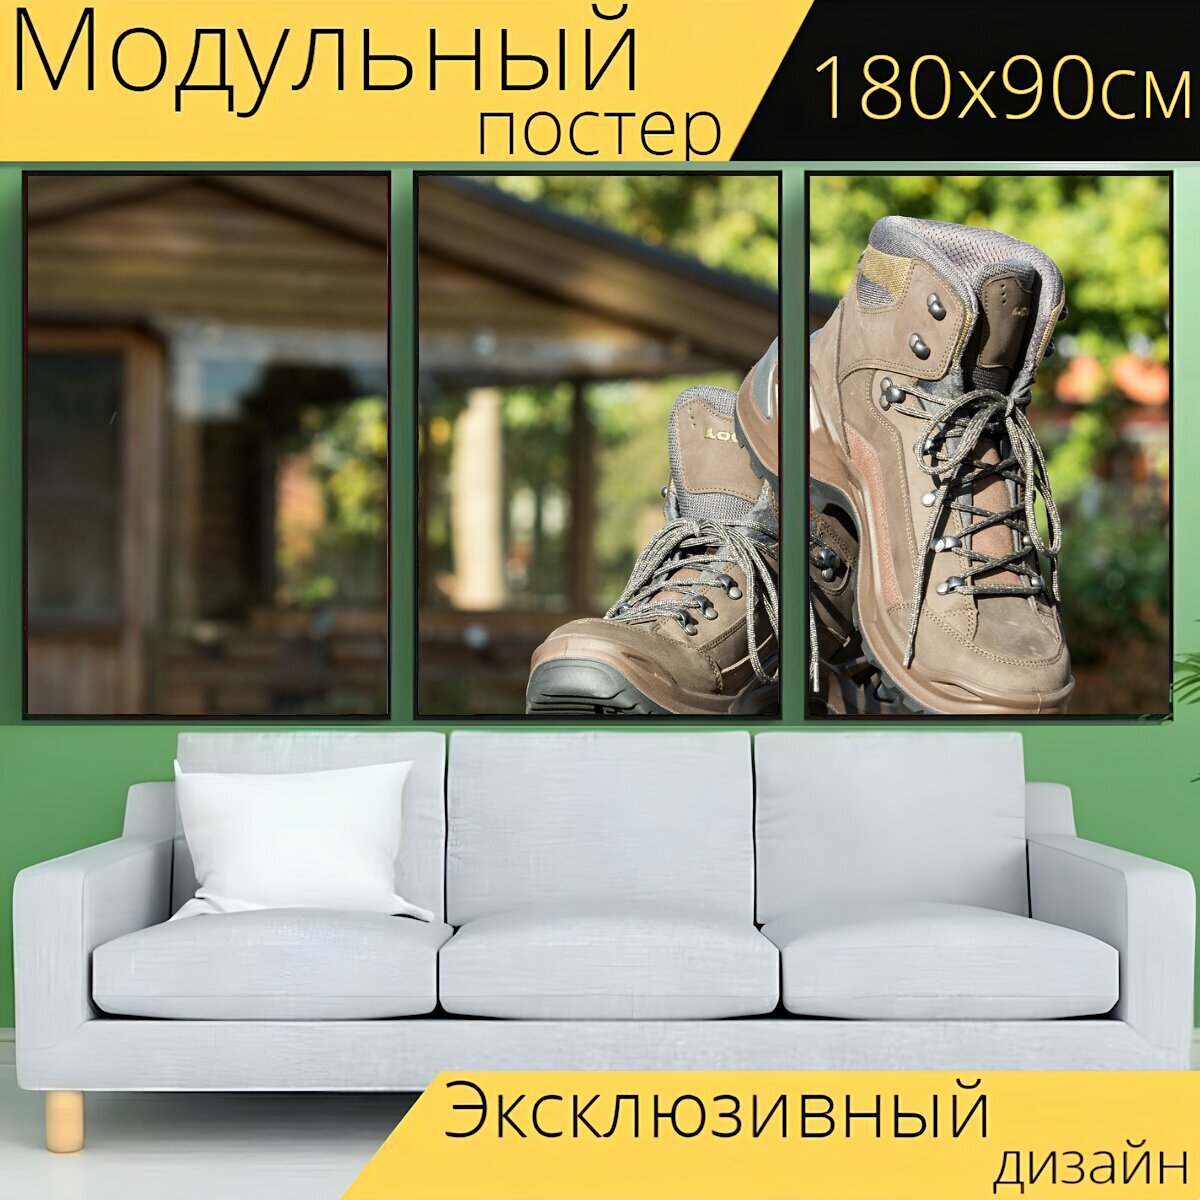 Модульный постер "Поход, обувь, туристические ботинки" 180 x 90 см. для интерьера